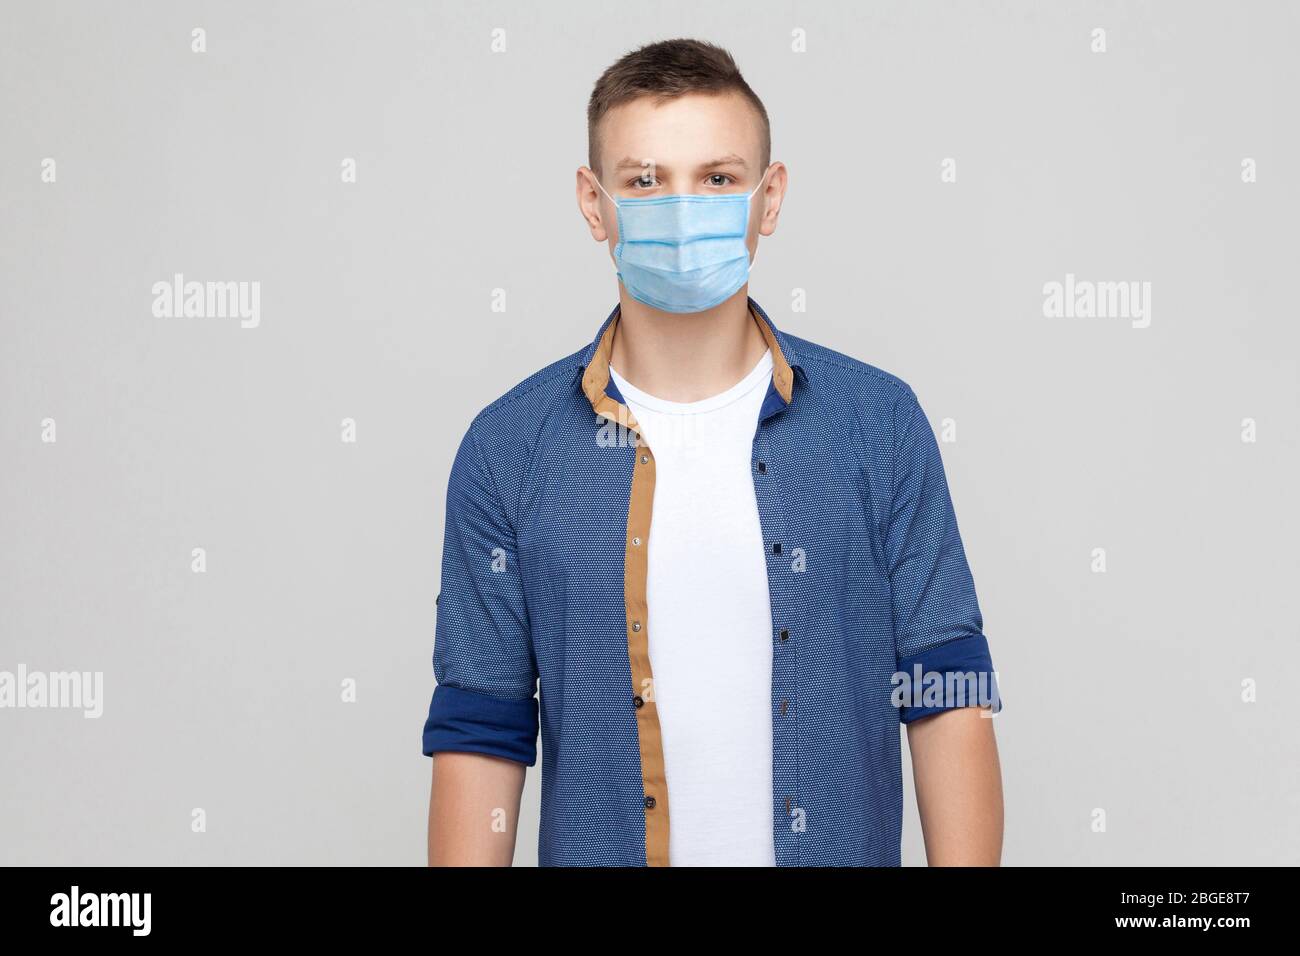 Protezione contro le malattie contagiose, coronavirus. Uomo che indossa la maschera igienica per prevenire le infezioni, le malattie respiratorie dell'aria come l'influenza, Covid-20 Foto Stock